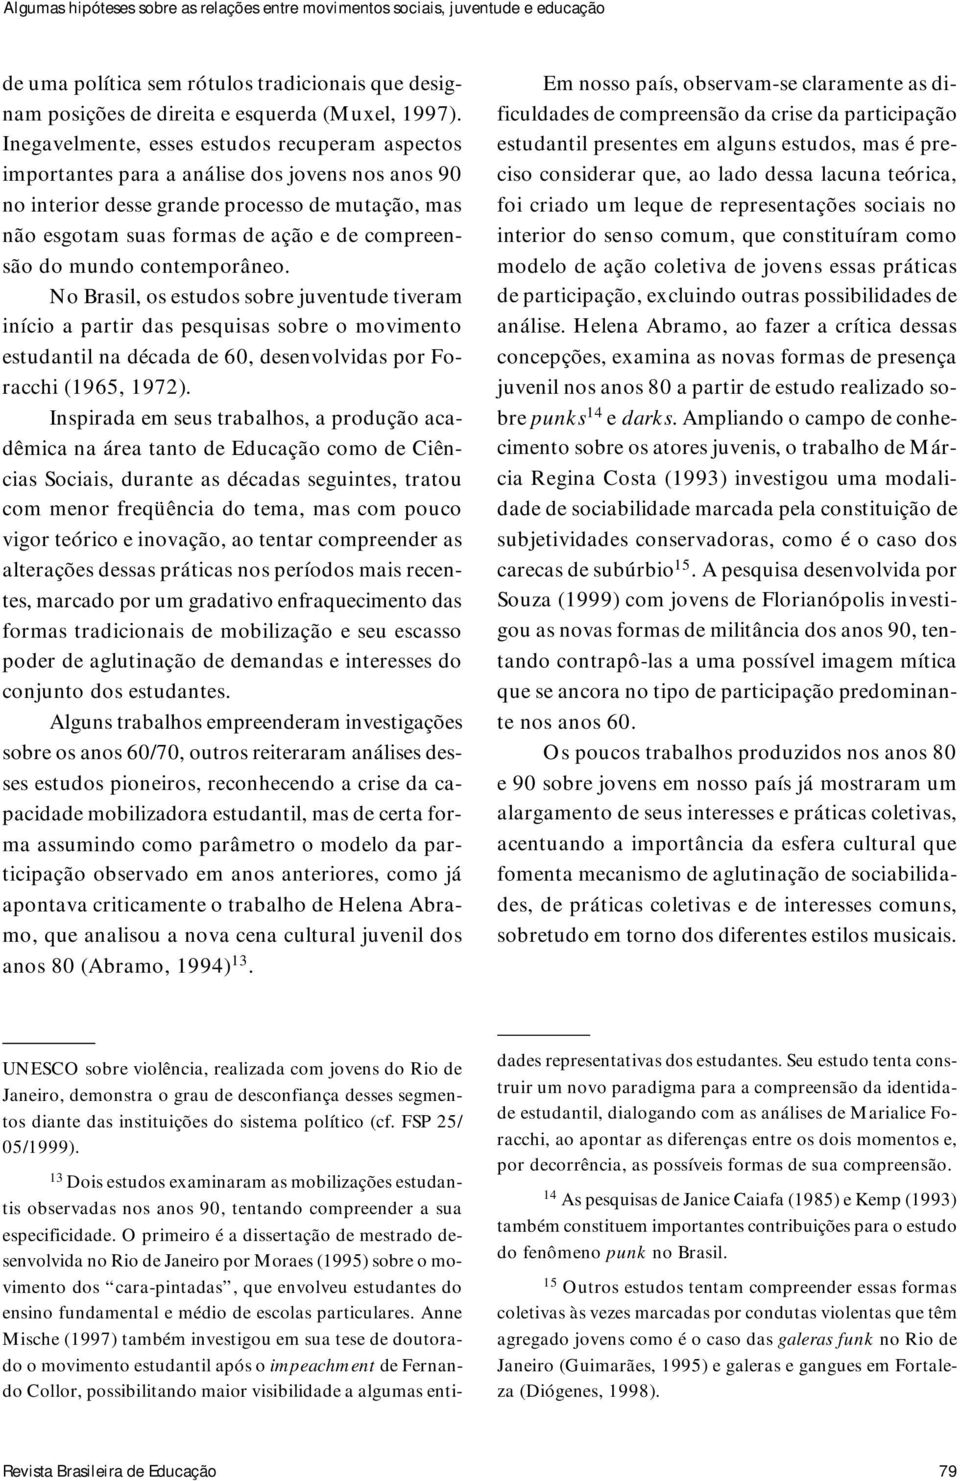 mundo contemporâneo. No Brasil, os estudos sobre juventude tiveram início a partir das pesquisas sobre o movimento estudantil na década de 60, desenvolvidas por Foracchi (1965, 1972).